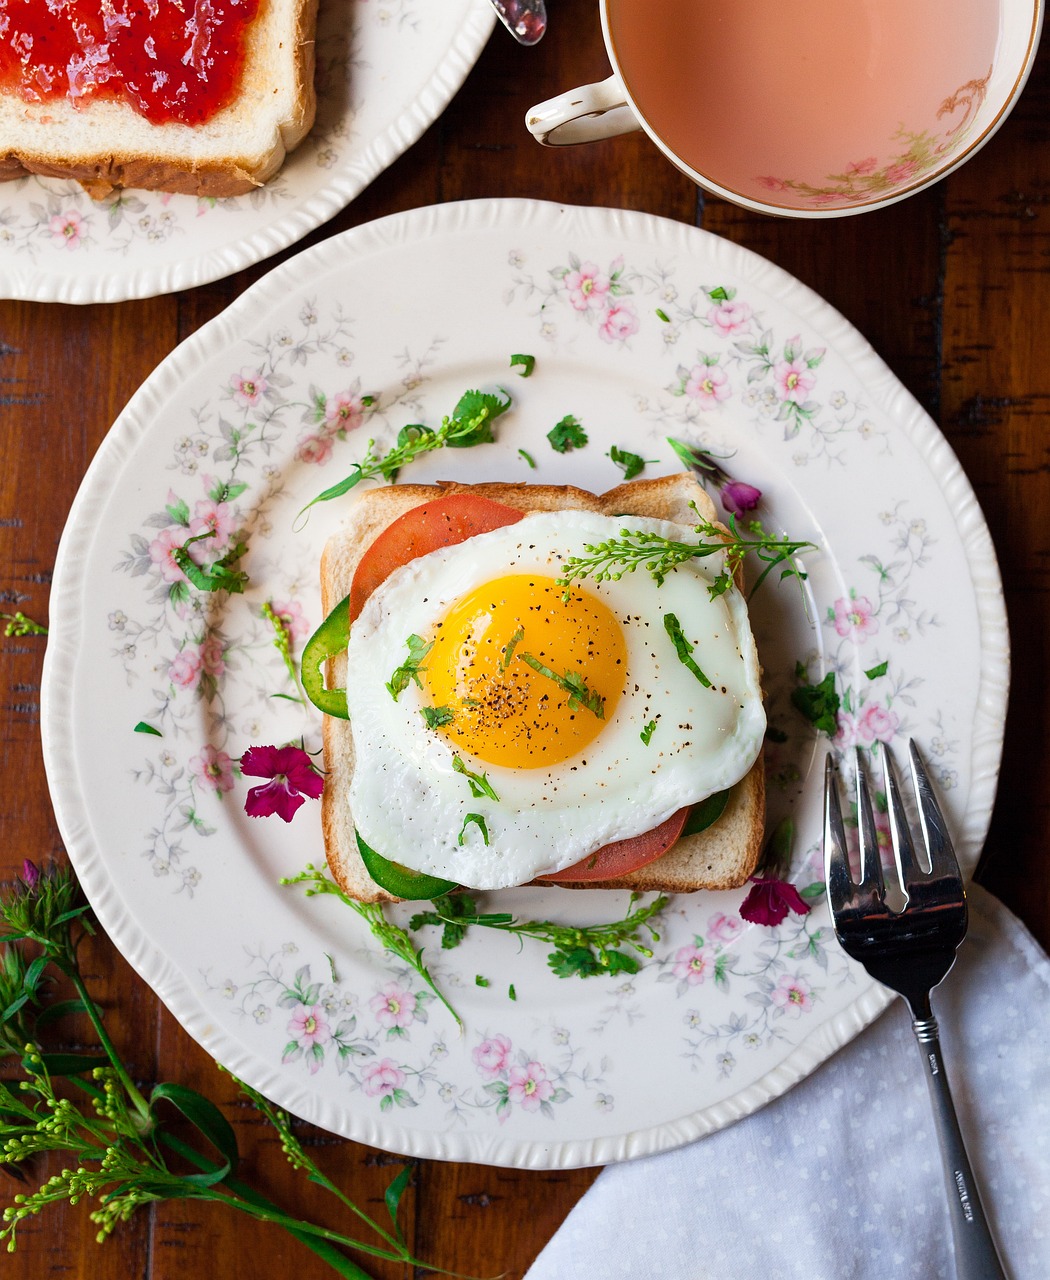 Zdrowy przepis na śniadanie z jajkiem ugotowanym na miękko